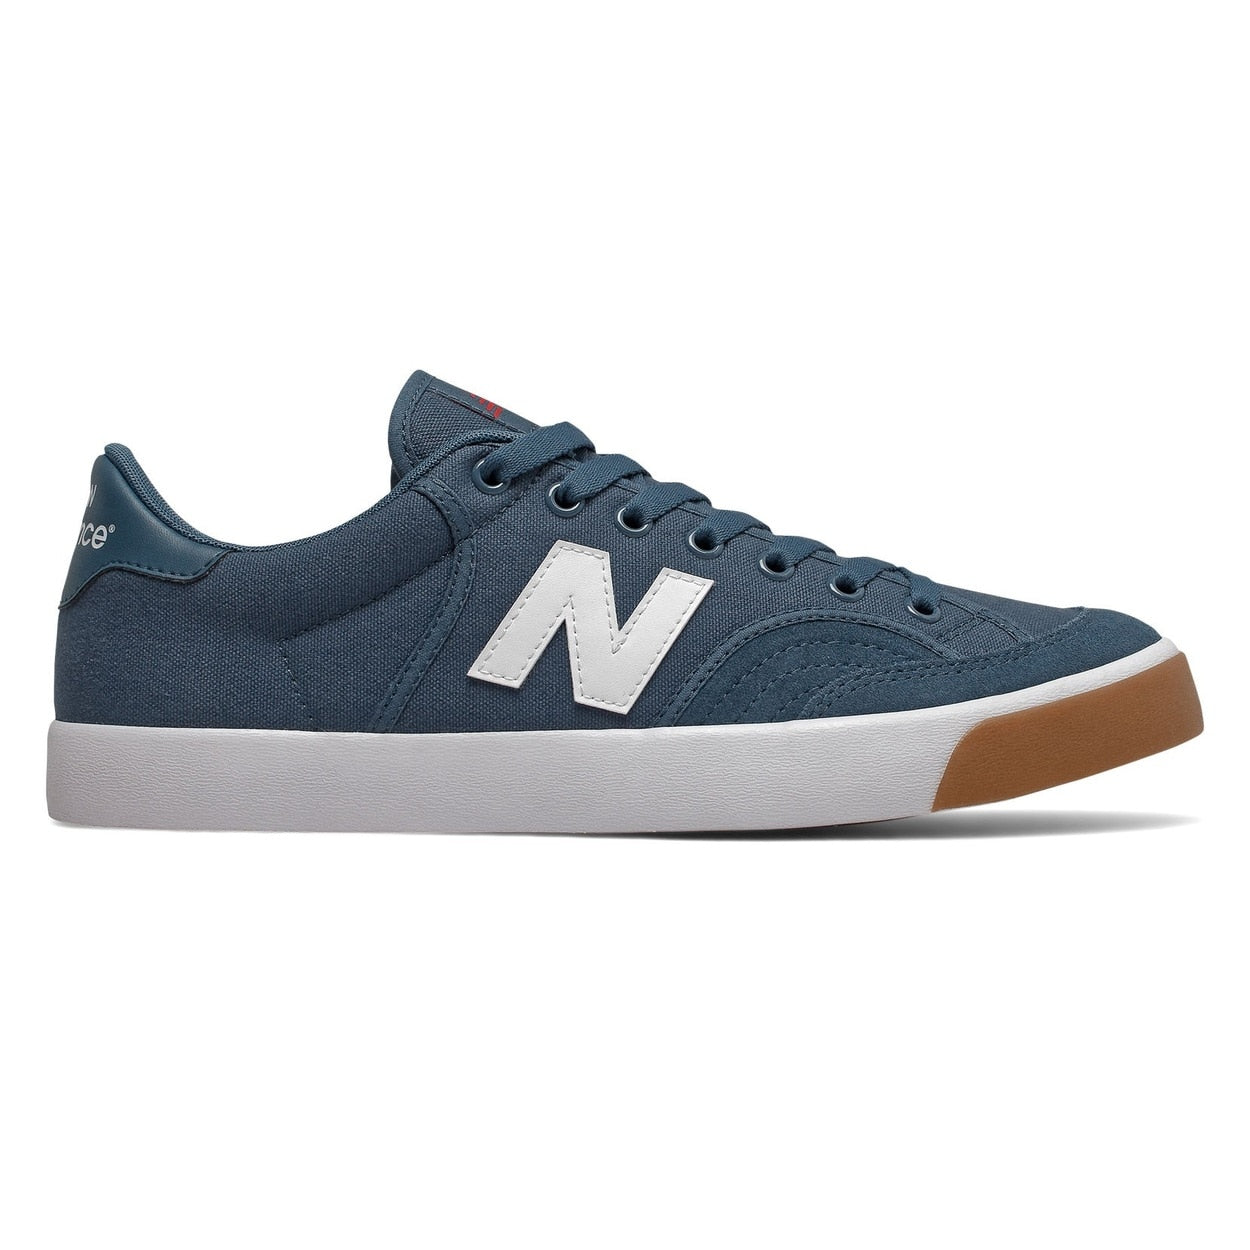 New Balance Numeric Pro Court 212 Skateboard Shoe - Blue/White